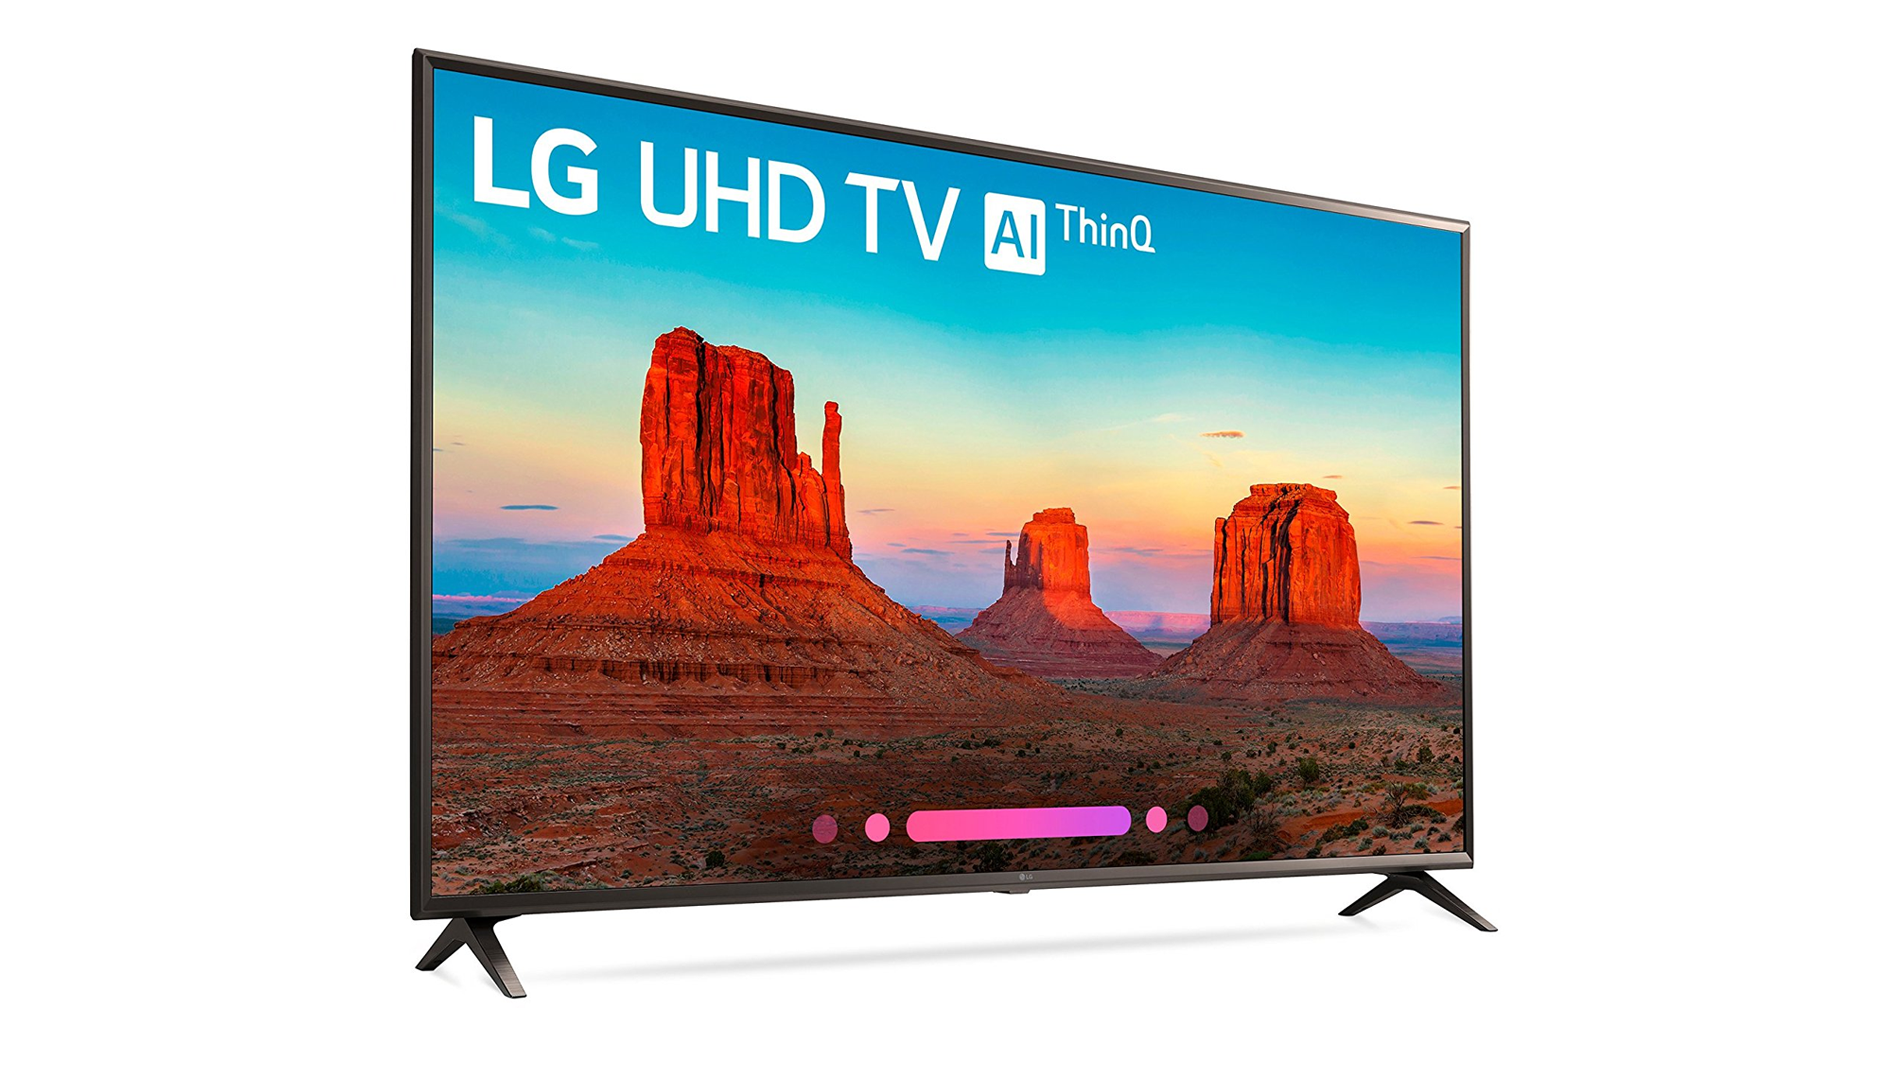 Телевизор 49 см. Uk6200pla LG телевизор. Телевизор 43" LG 43uk6200pla. LG 43uk6200pla матрица. LG 65uk6300 2018 led, HDR.